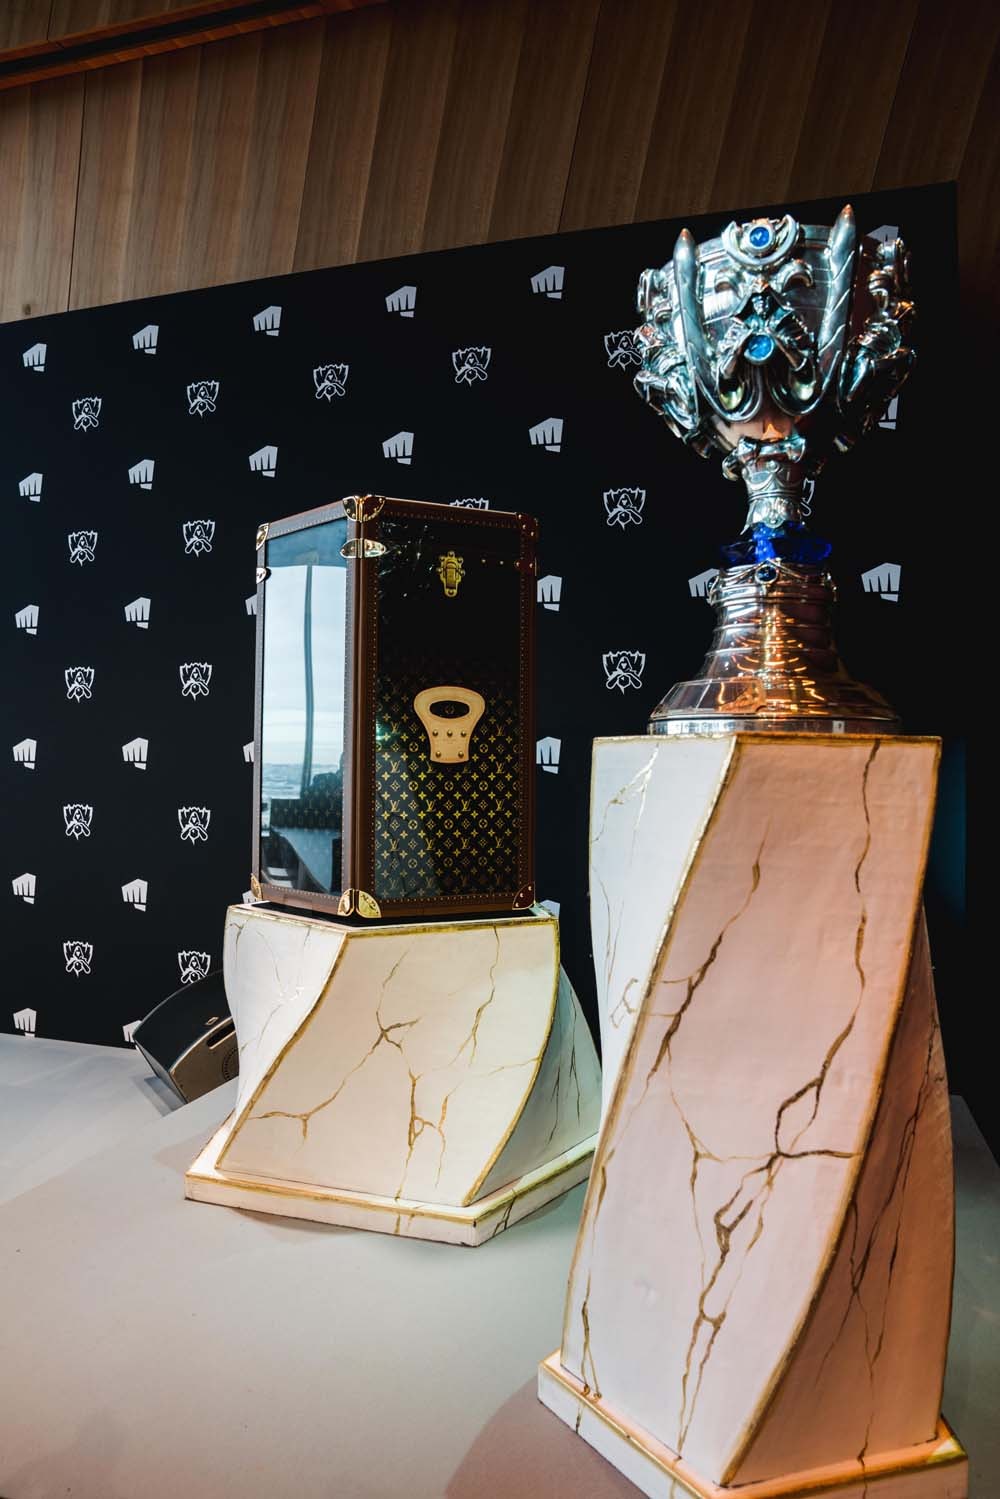 Louis Vuitton Reveals Epic Custom Case for 'League of Legends' Trophy